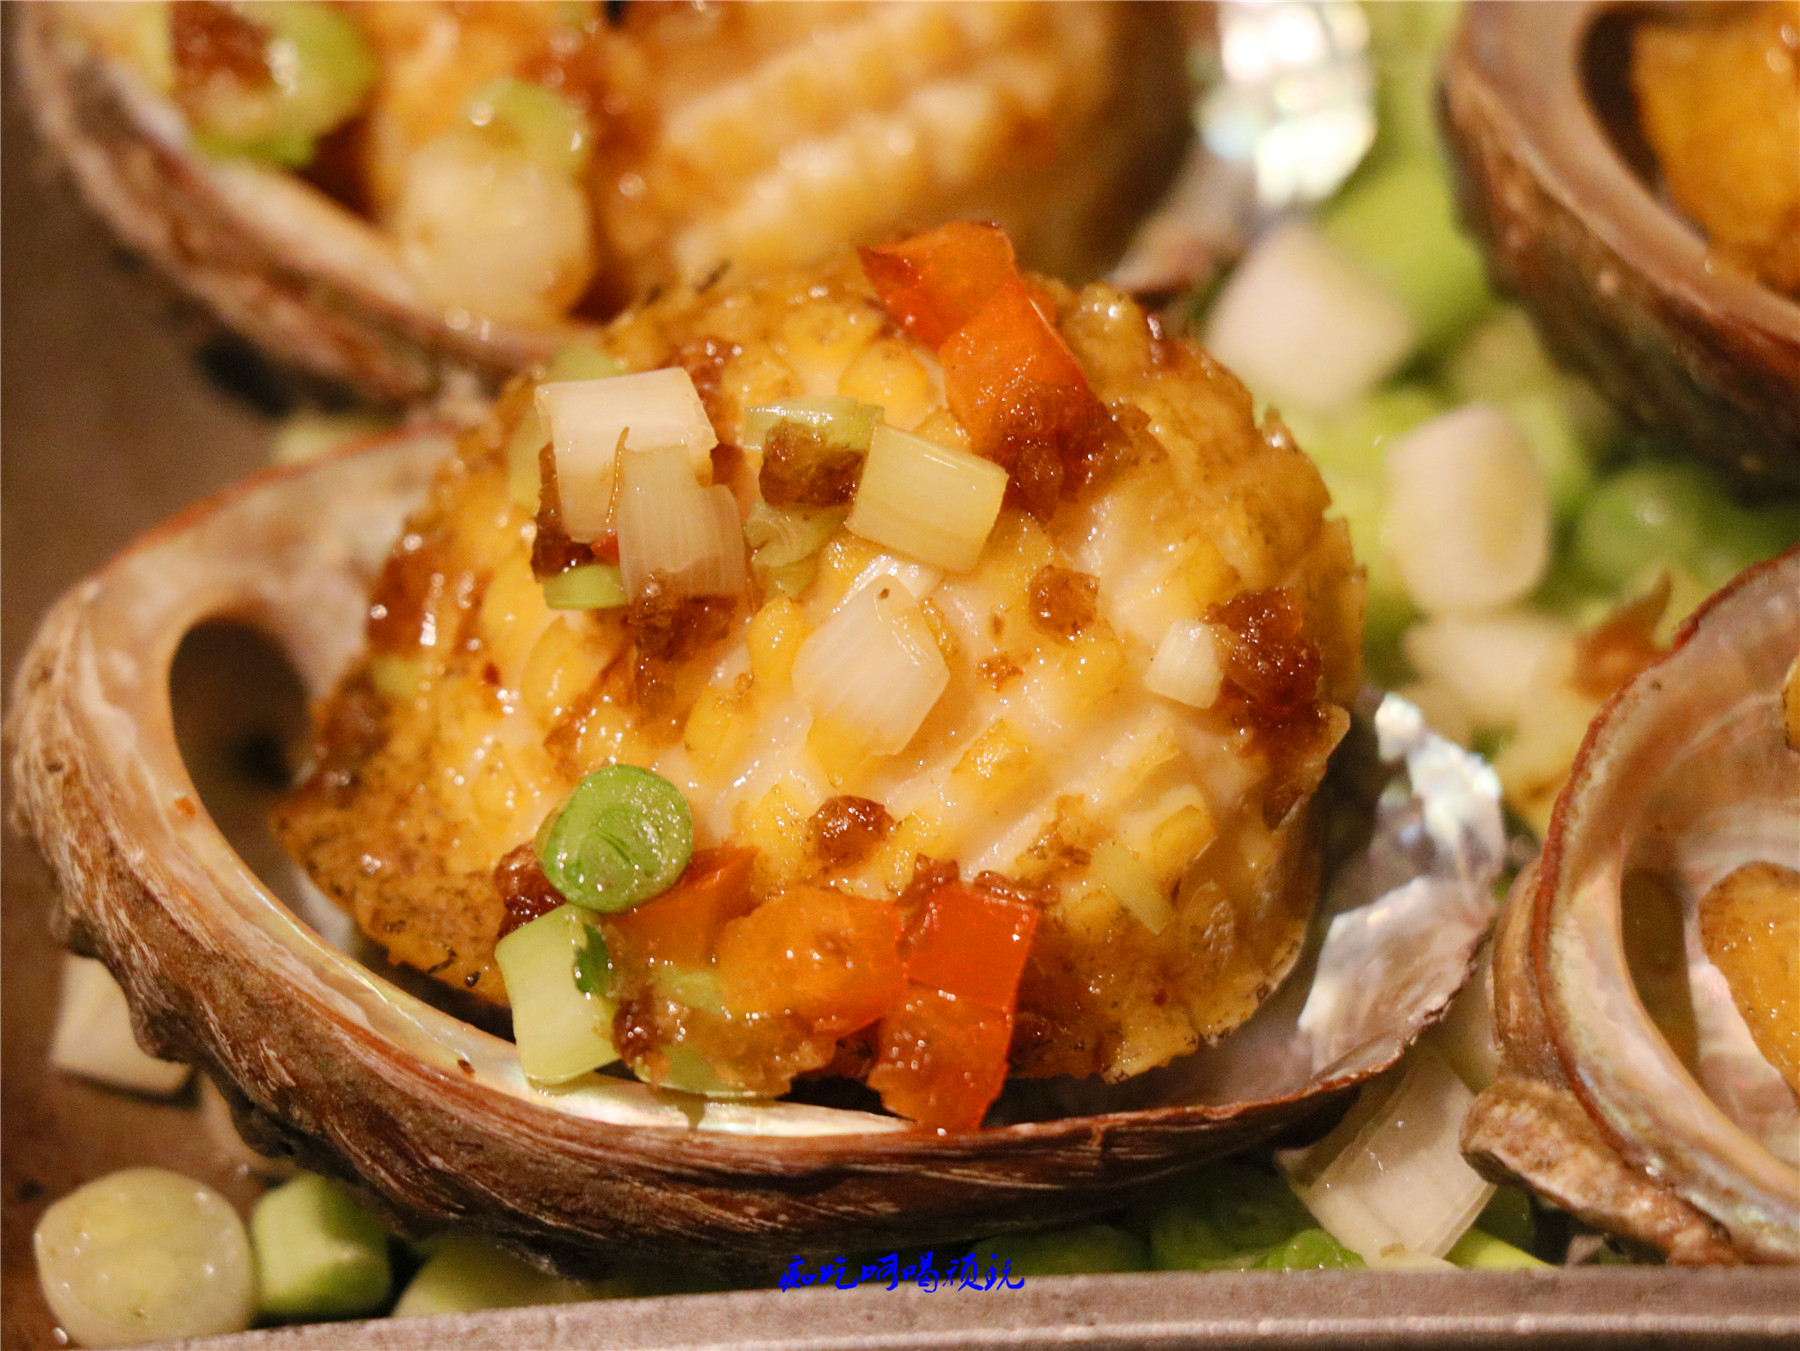 海鲜食材发挥得淋漓尽致,香葱焗鲍鱼,香葱的味道烘托出鲍鱼的鲜甜